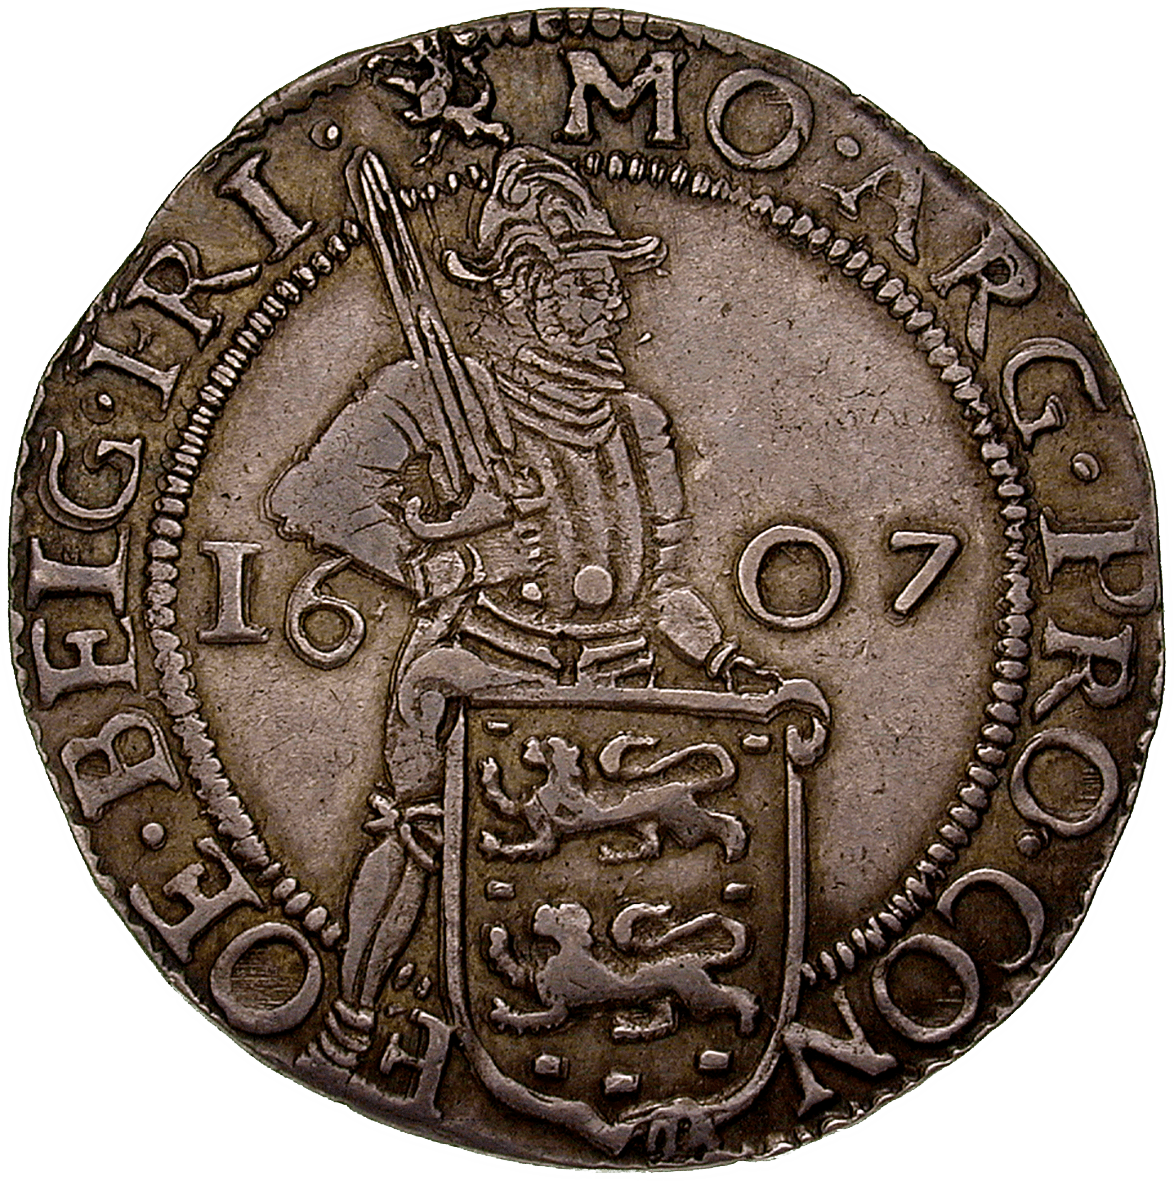 Netherlands, Province of Friesland, Shilling at 20 Groot 1607 (obverse)